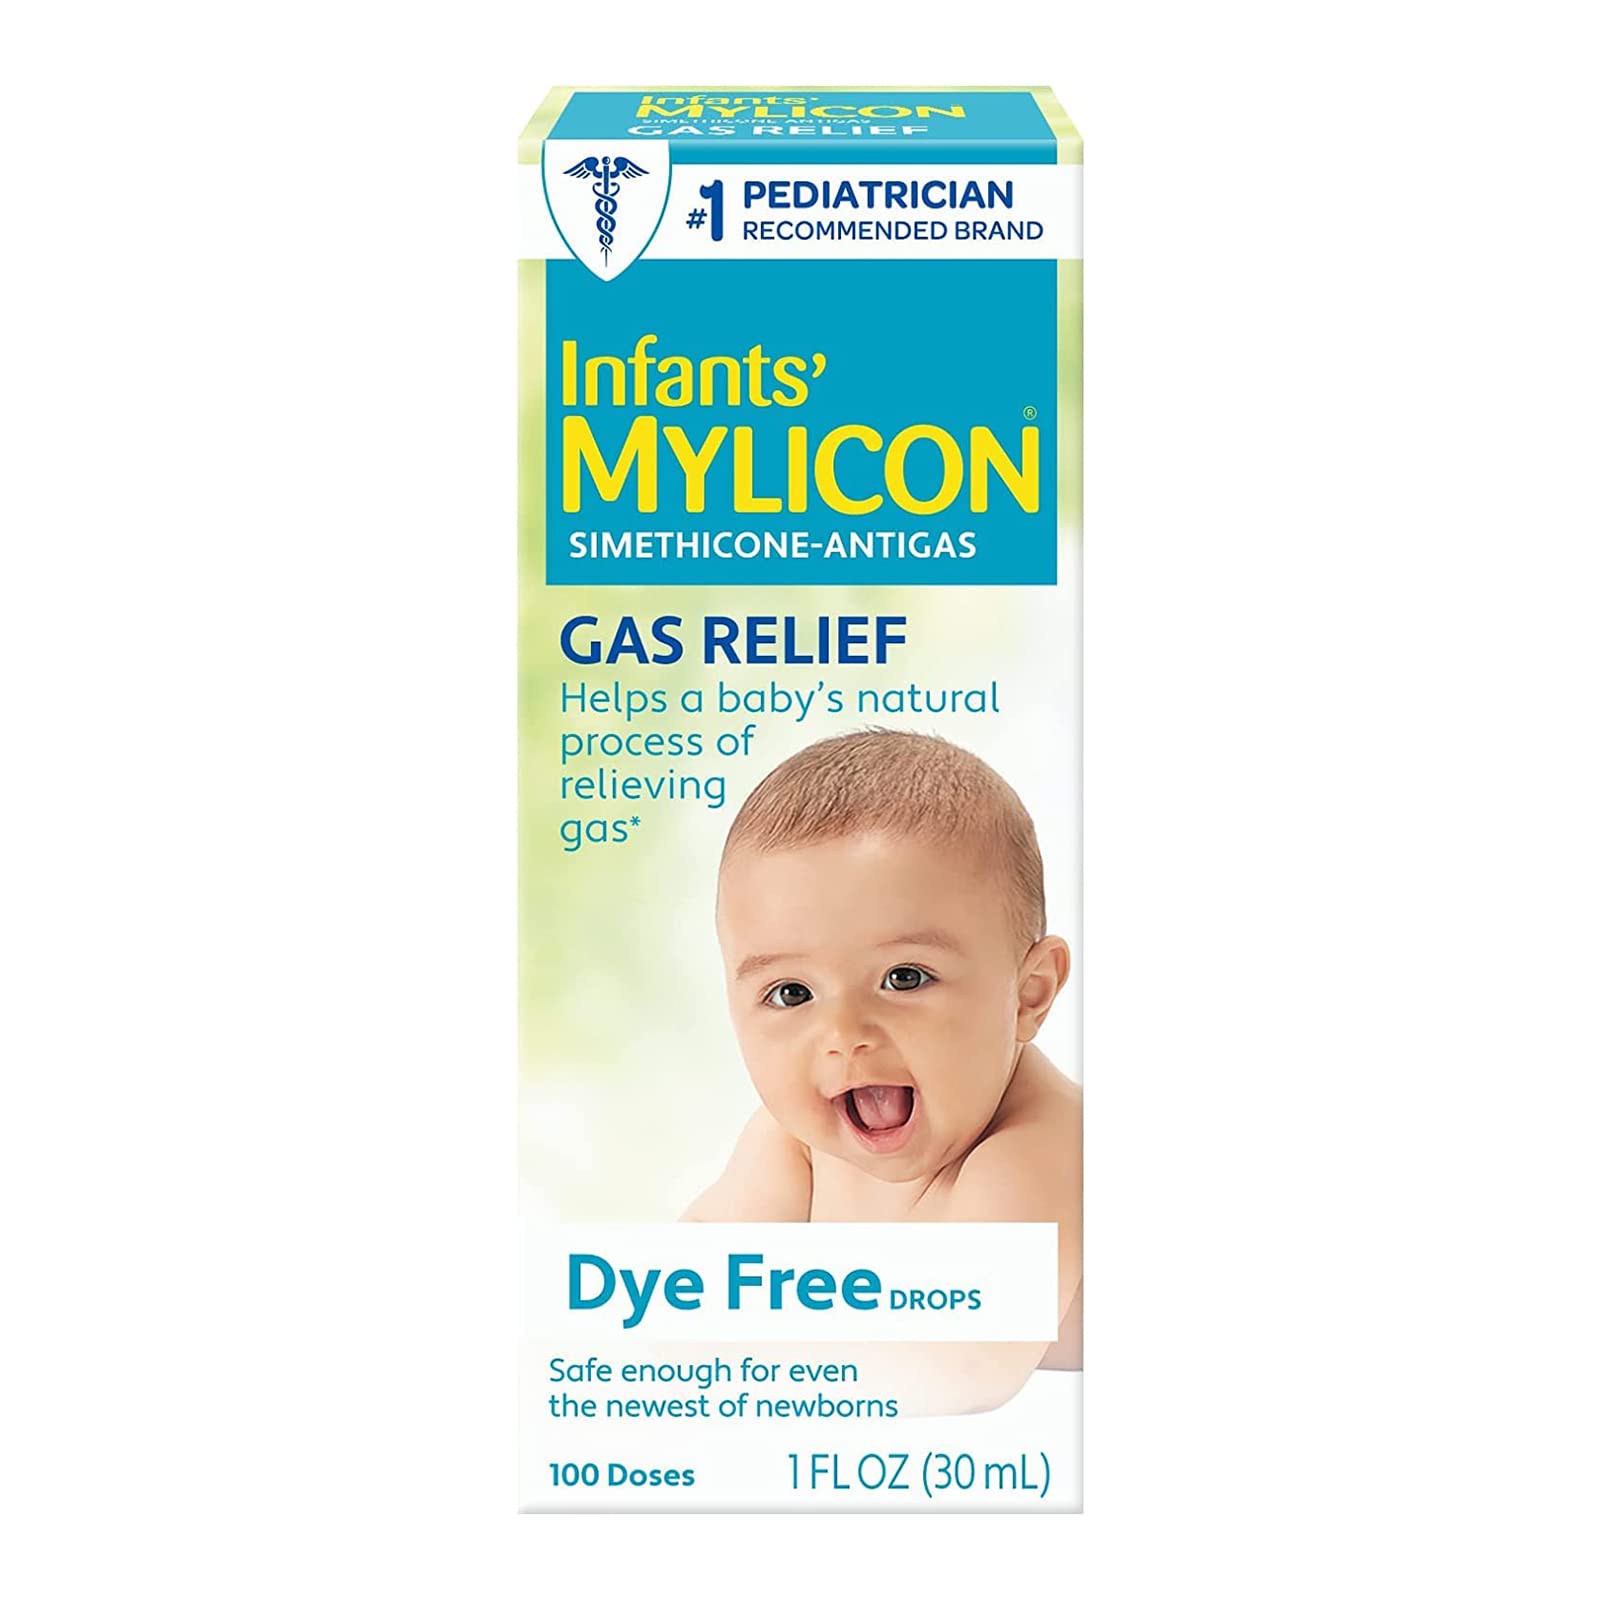 mylicon original vs dye free